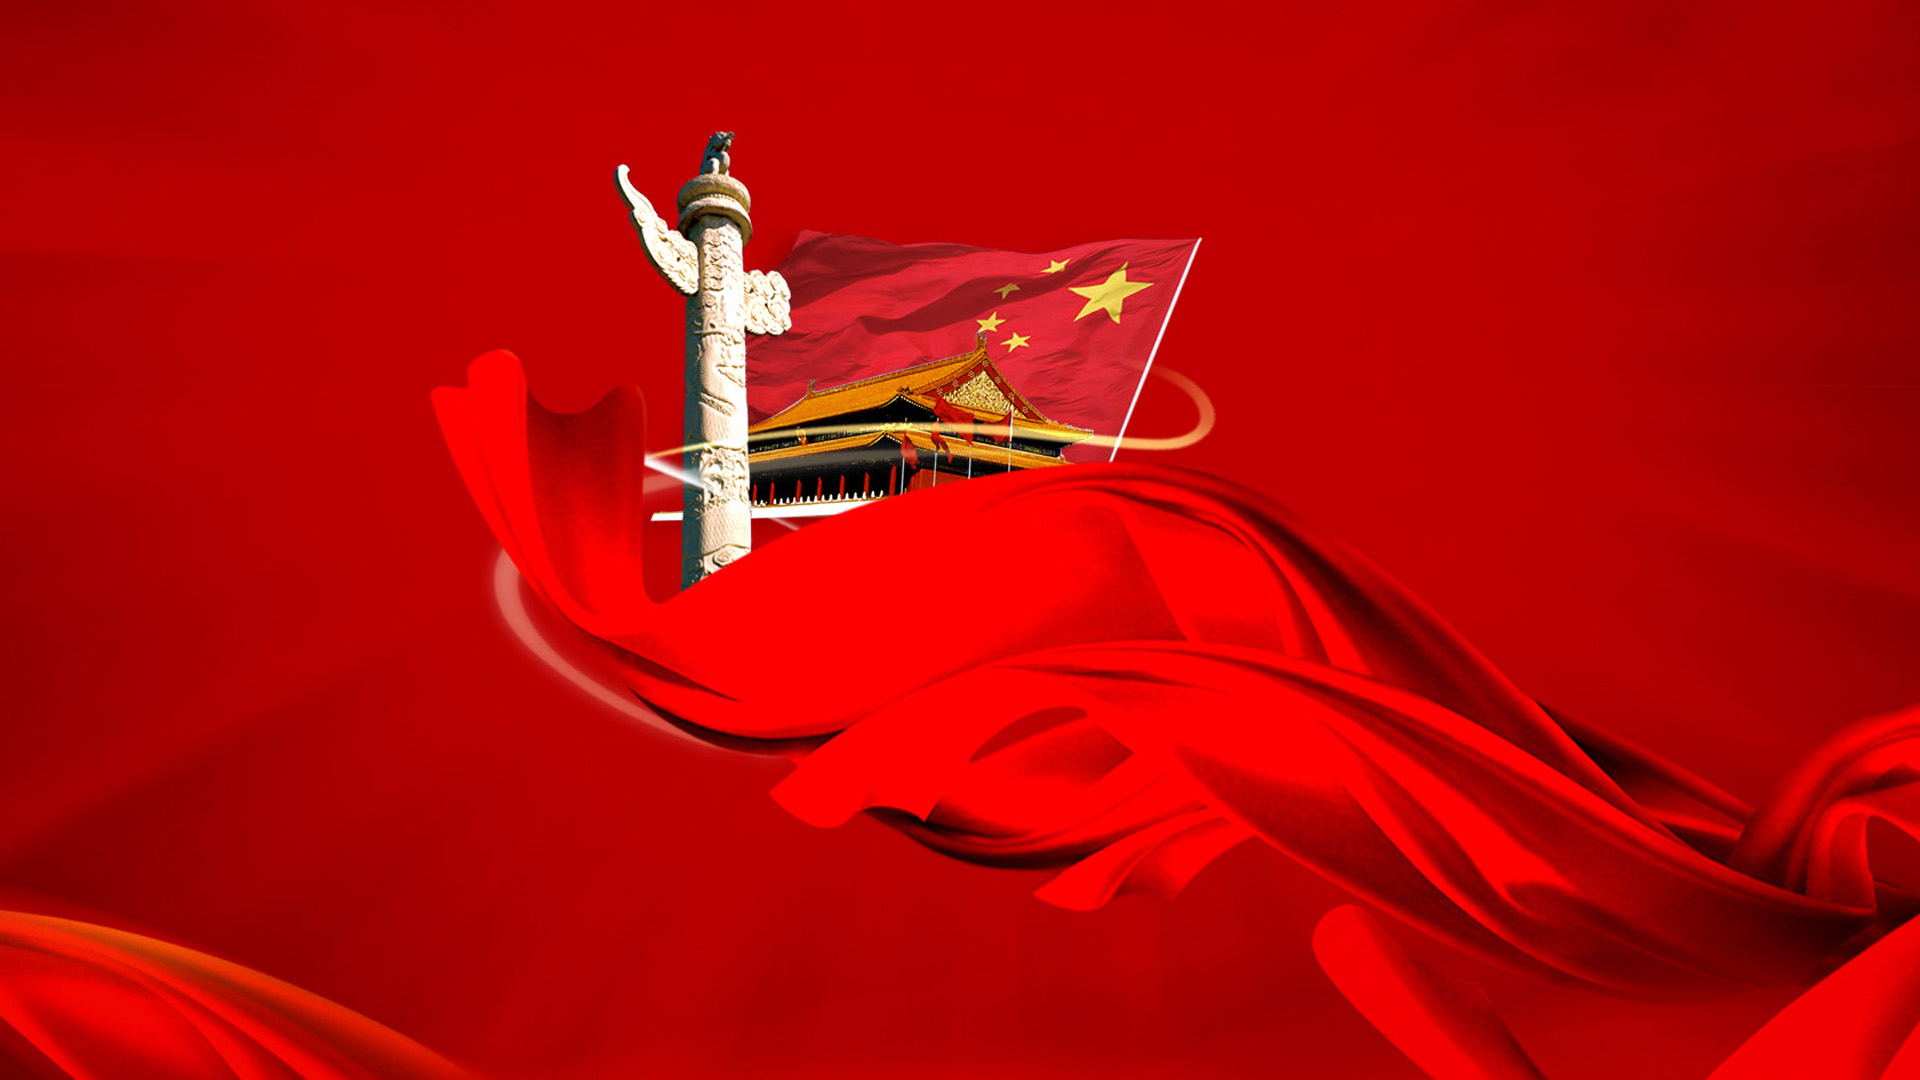 2012国庆节桌面图片 桌面壁纸 旗帜